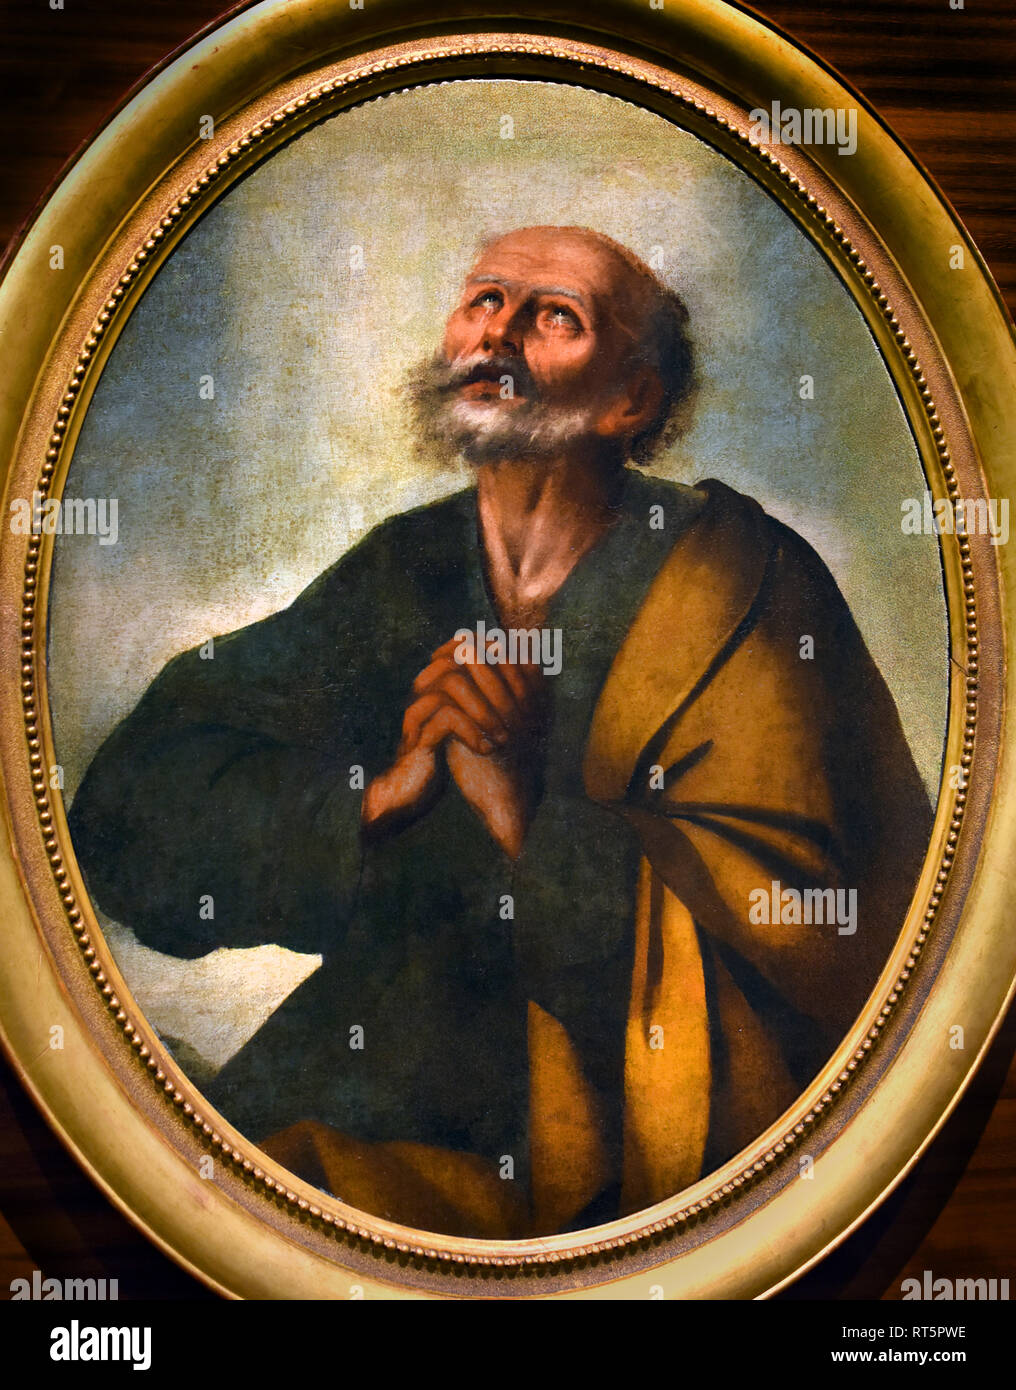 San Pedro en lágrimas artista desconocido del siglo XVII España, español. Foto de stock